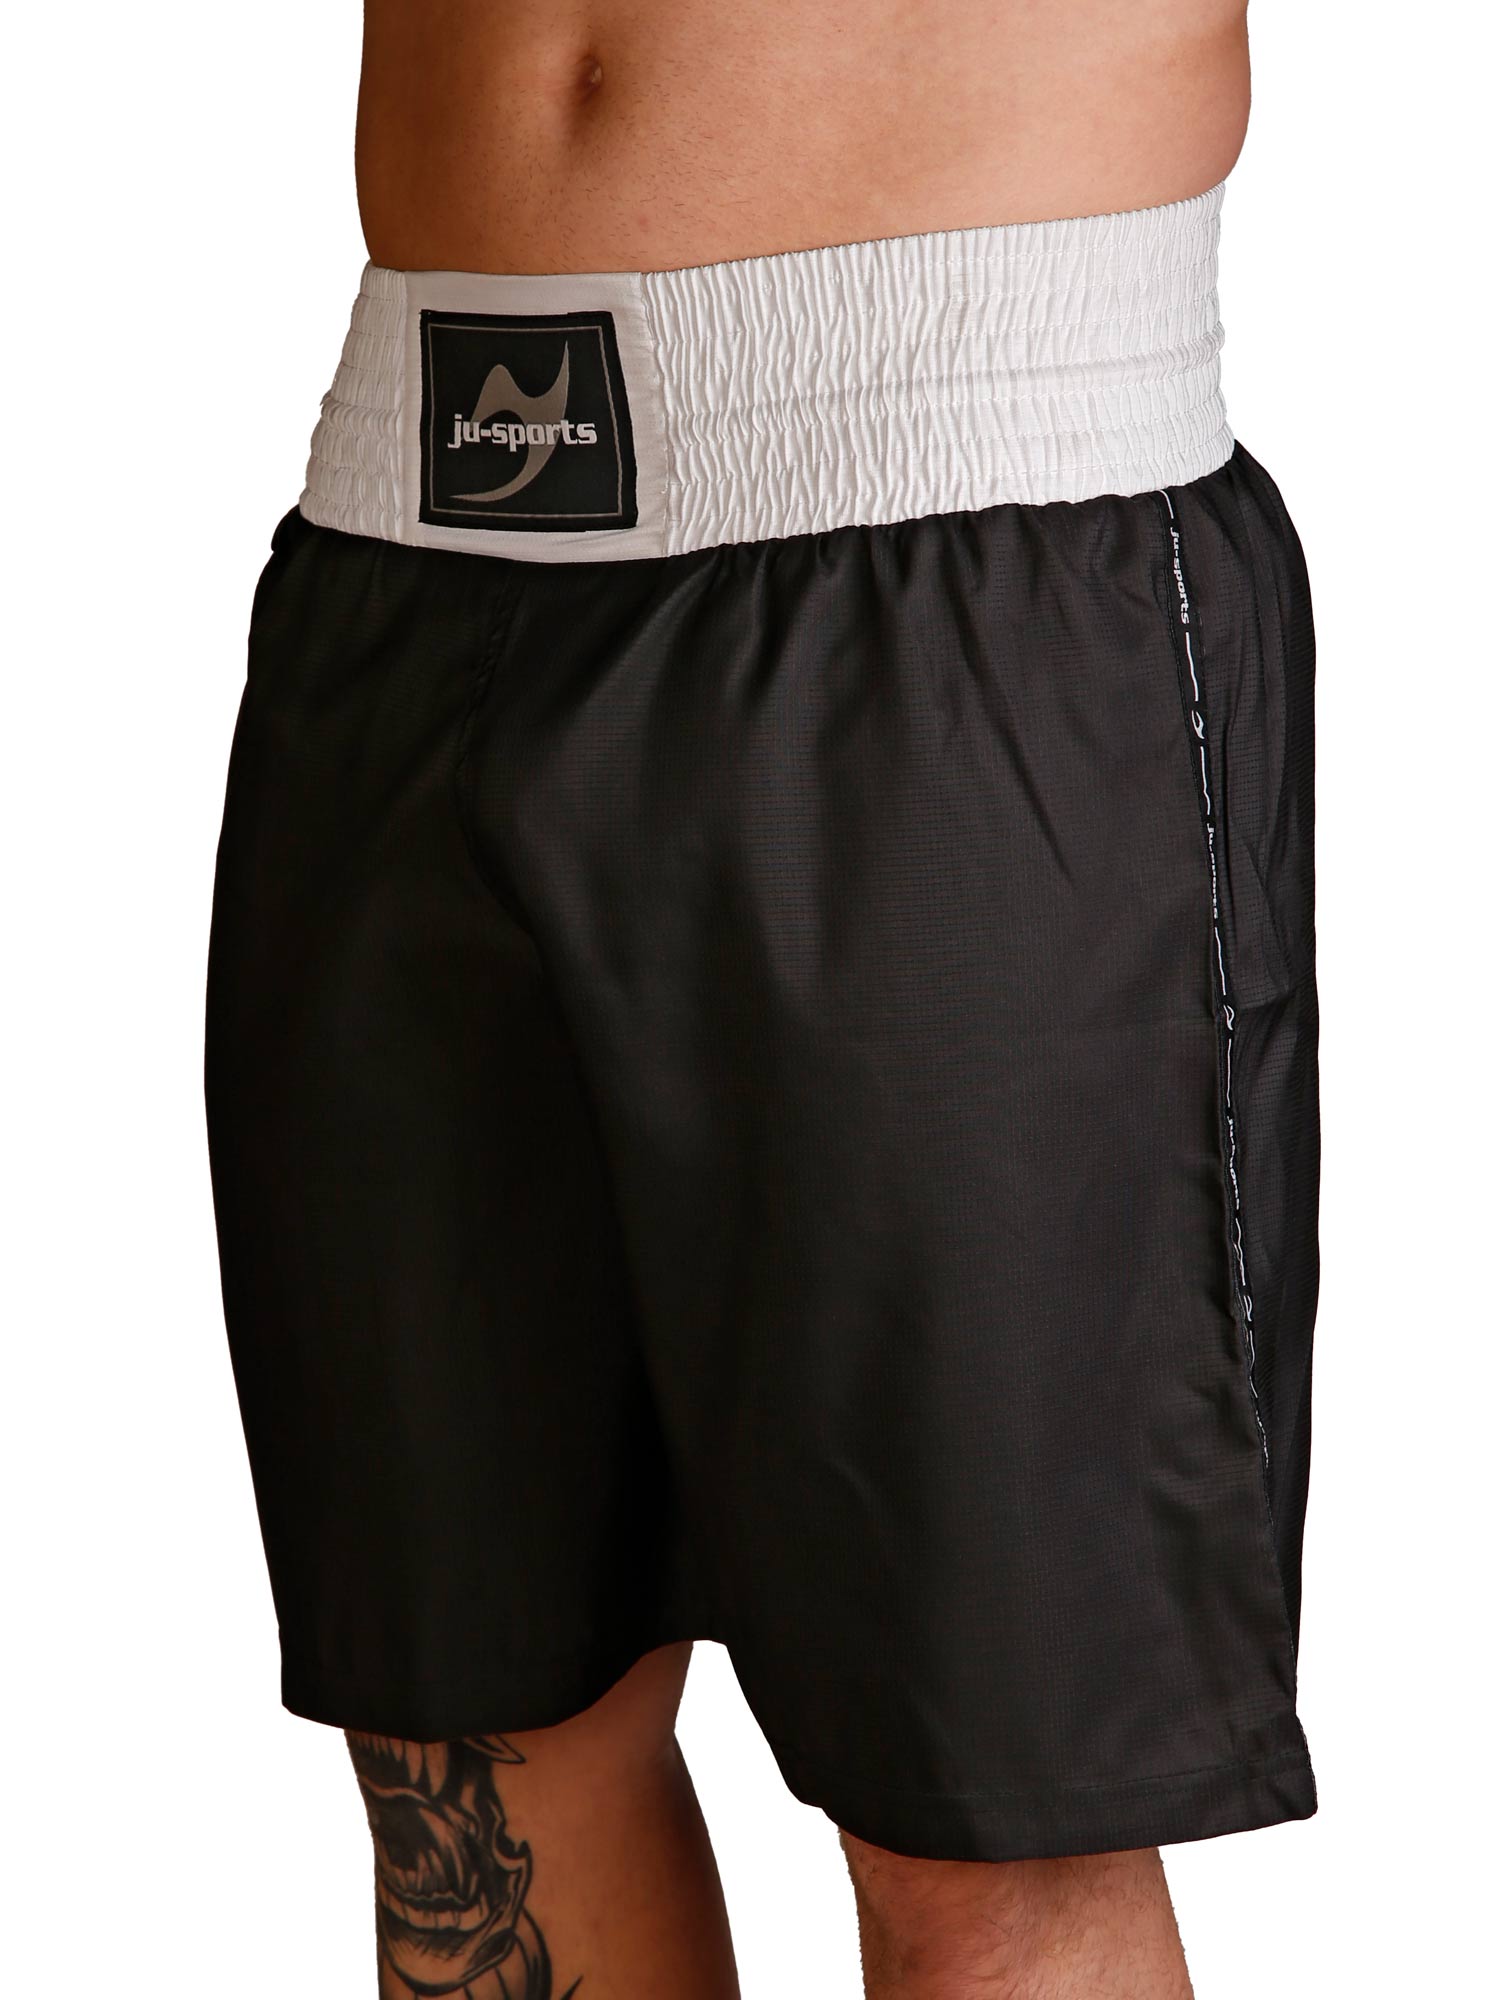 Kickboxing shorts Kick Light pro black